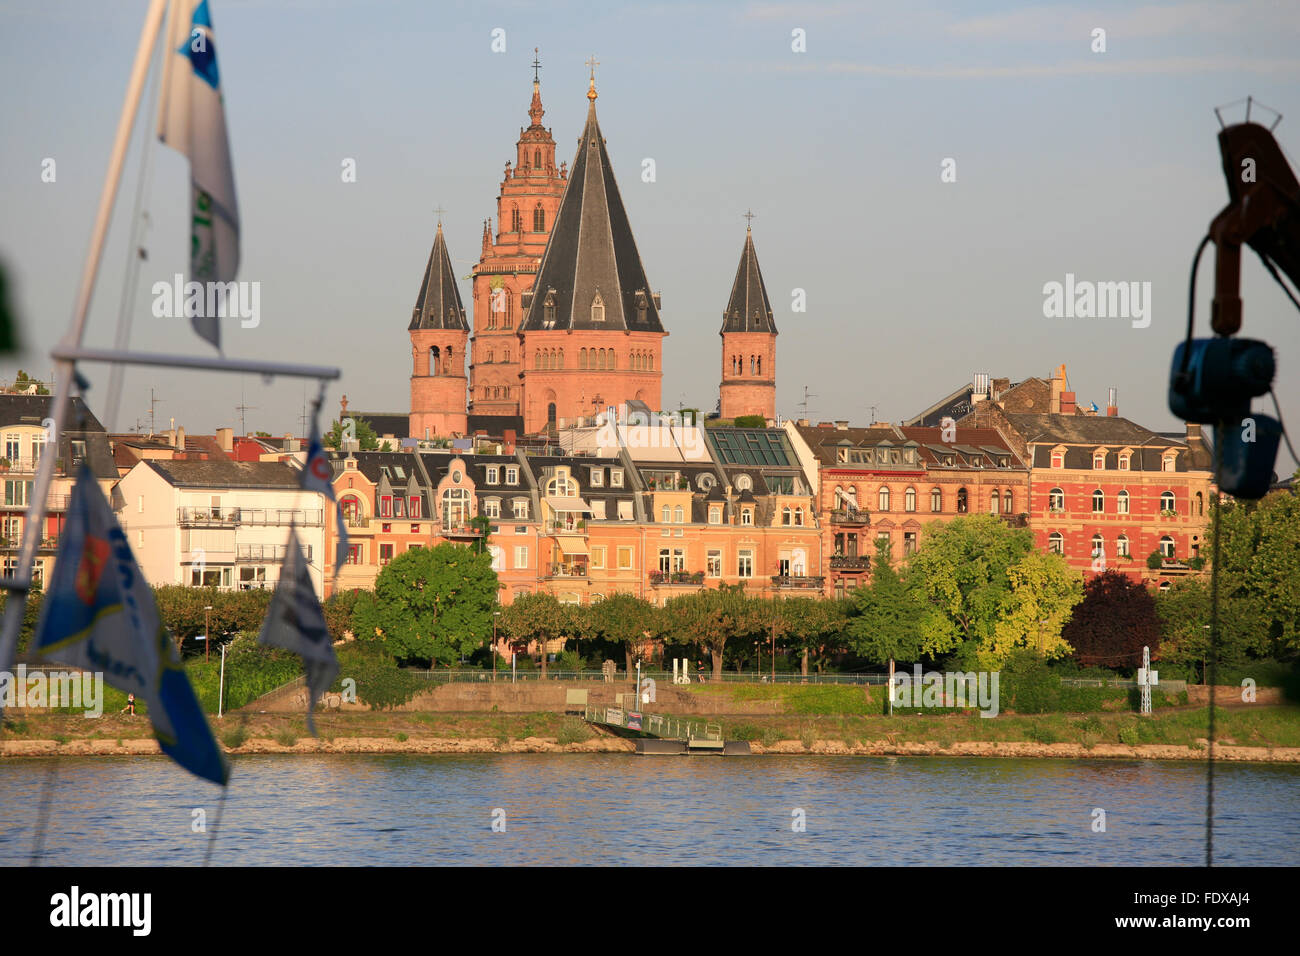 Deutschland, Renania-Palatinato, Mainz, Uferpromenade und Dom San Martin Foto Stock